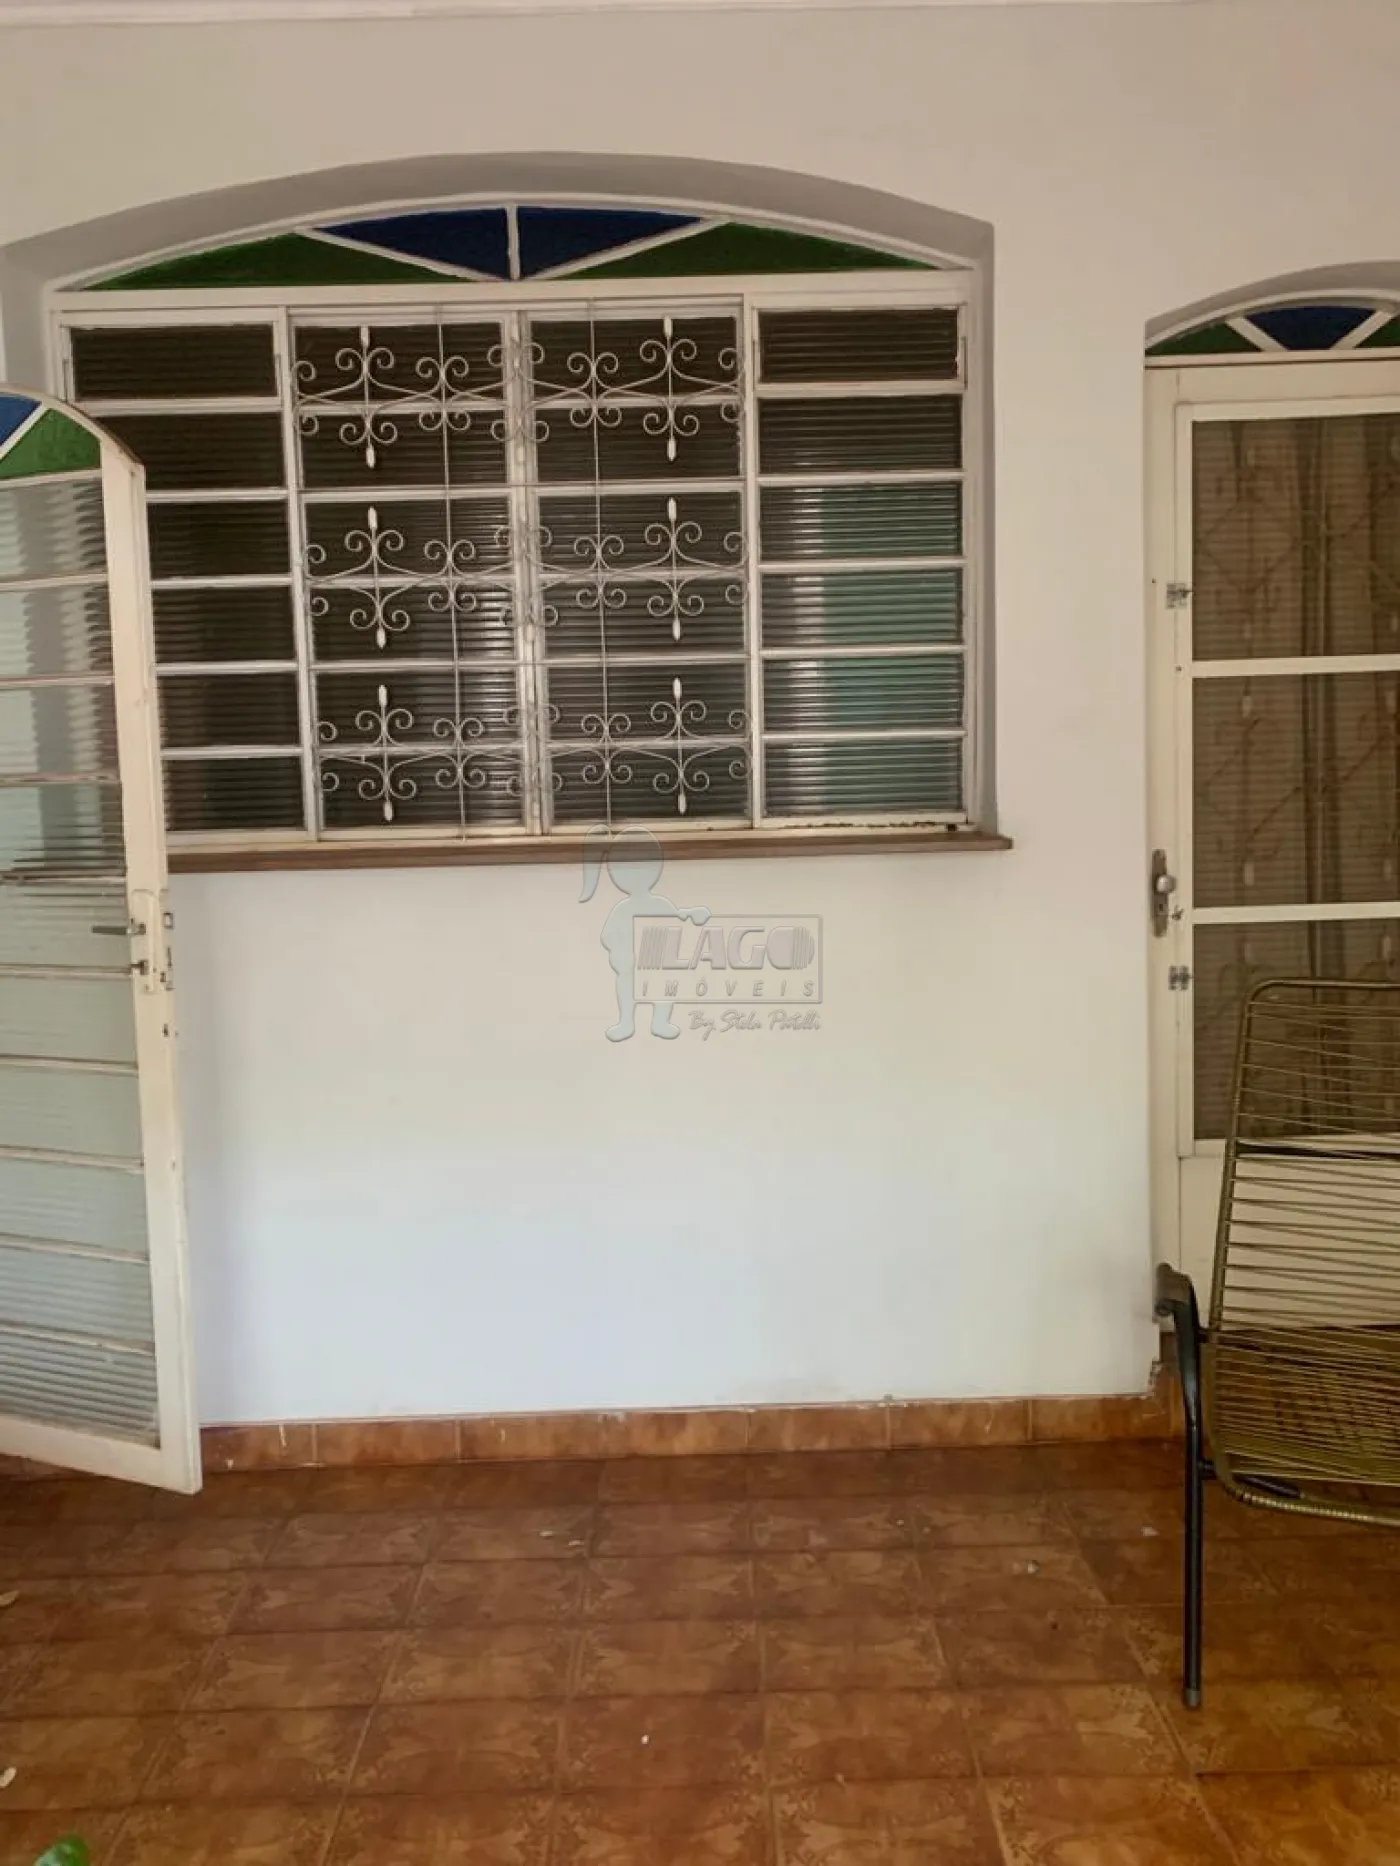 Comprar Casas / Padrão em Ribeirão Preto R$ 260.000,00 - Foto 2